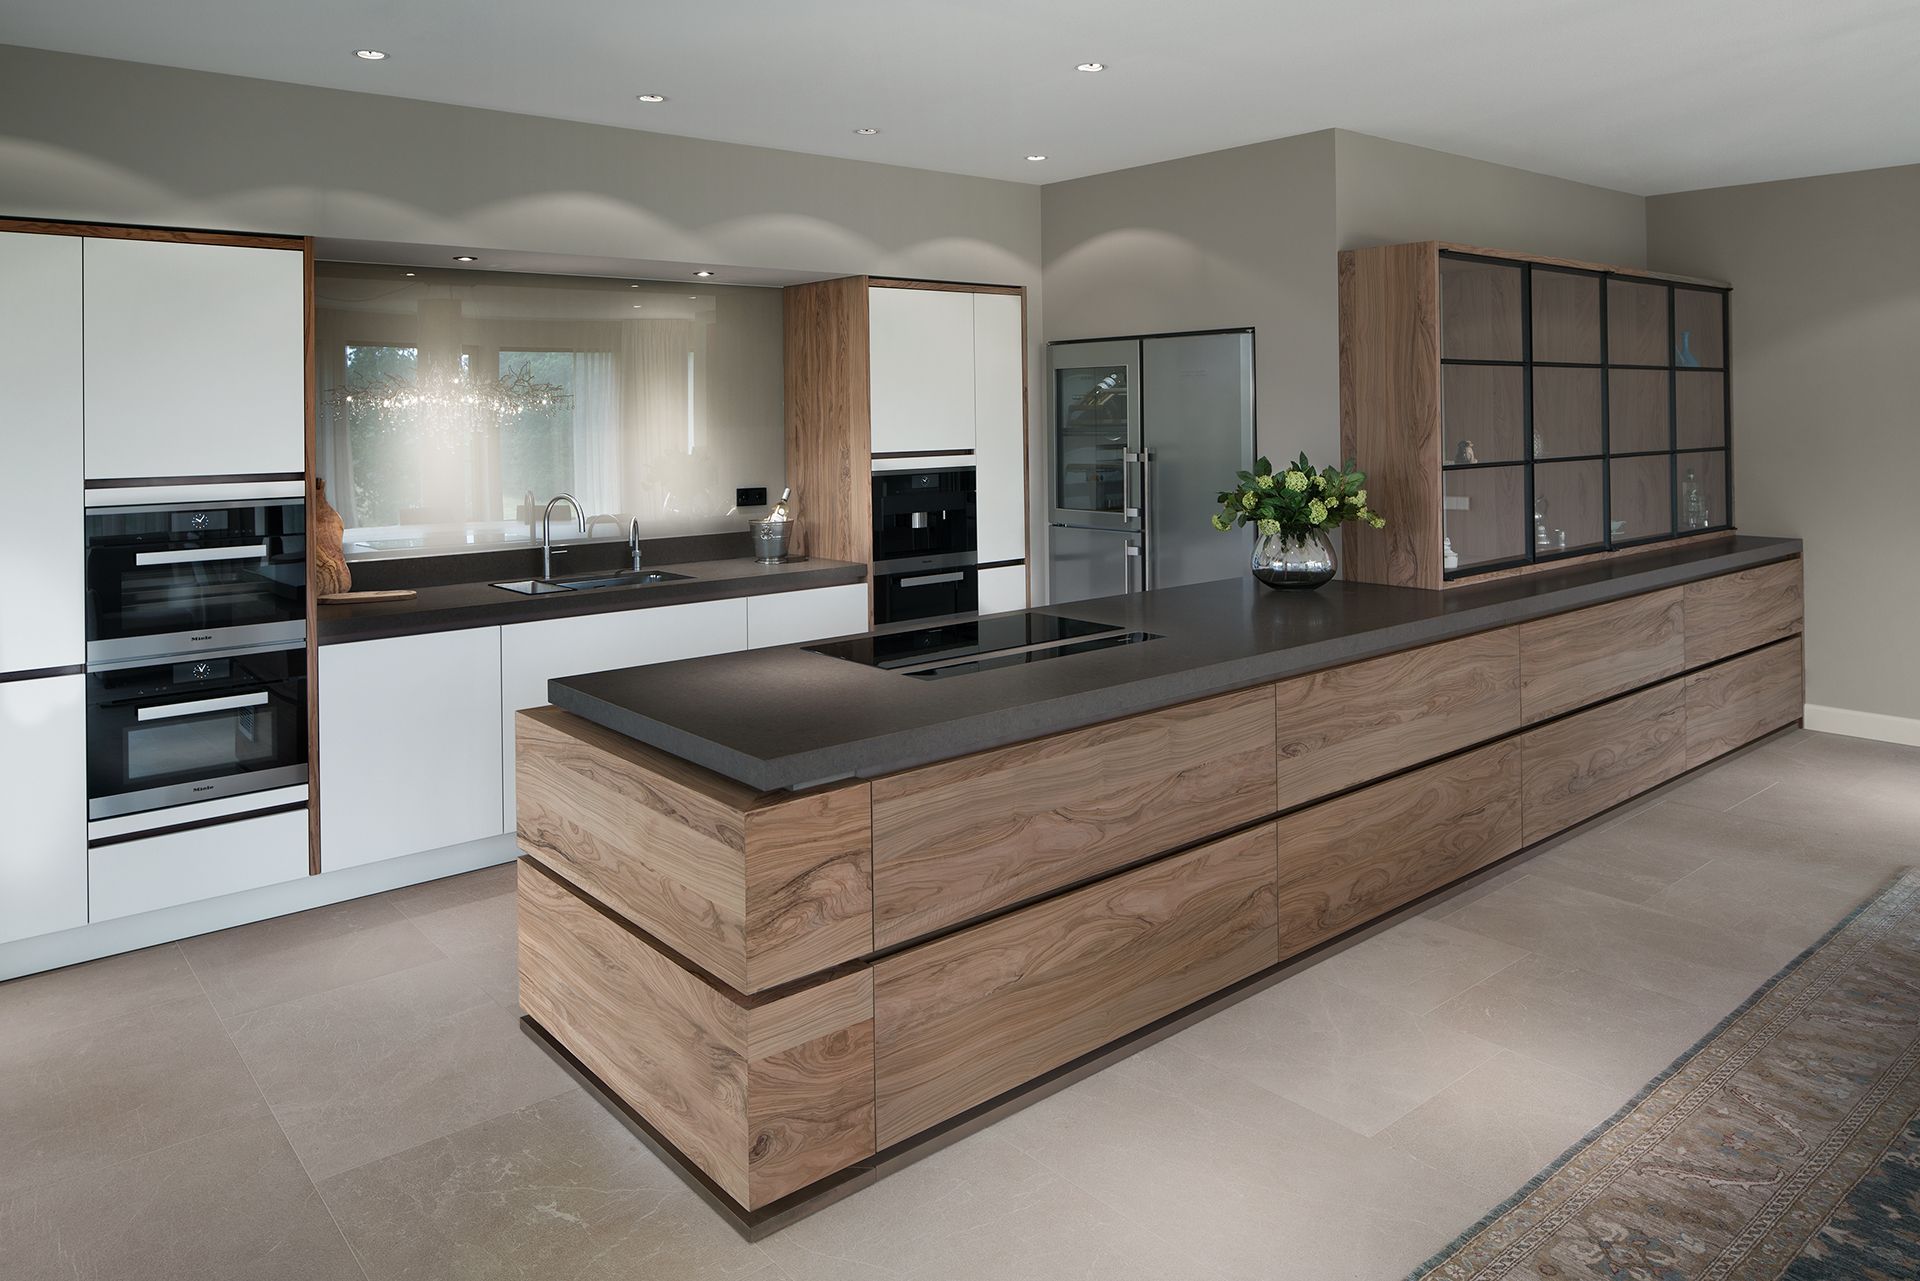 Een moderne keuken komt tot leven door de combinatie van strak witte fronten en levendig olijfhout. Verborgen blikvanger is de